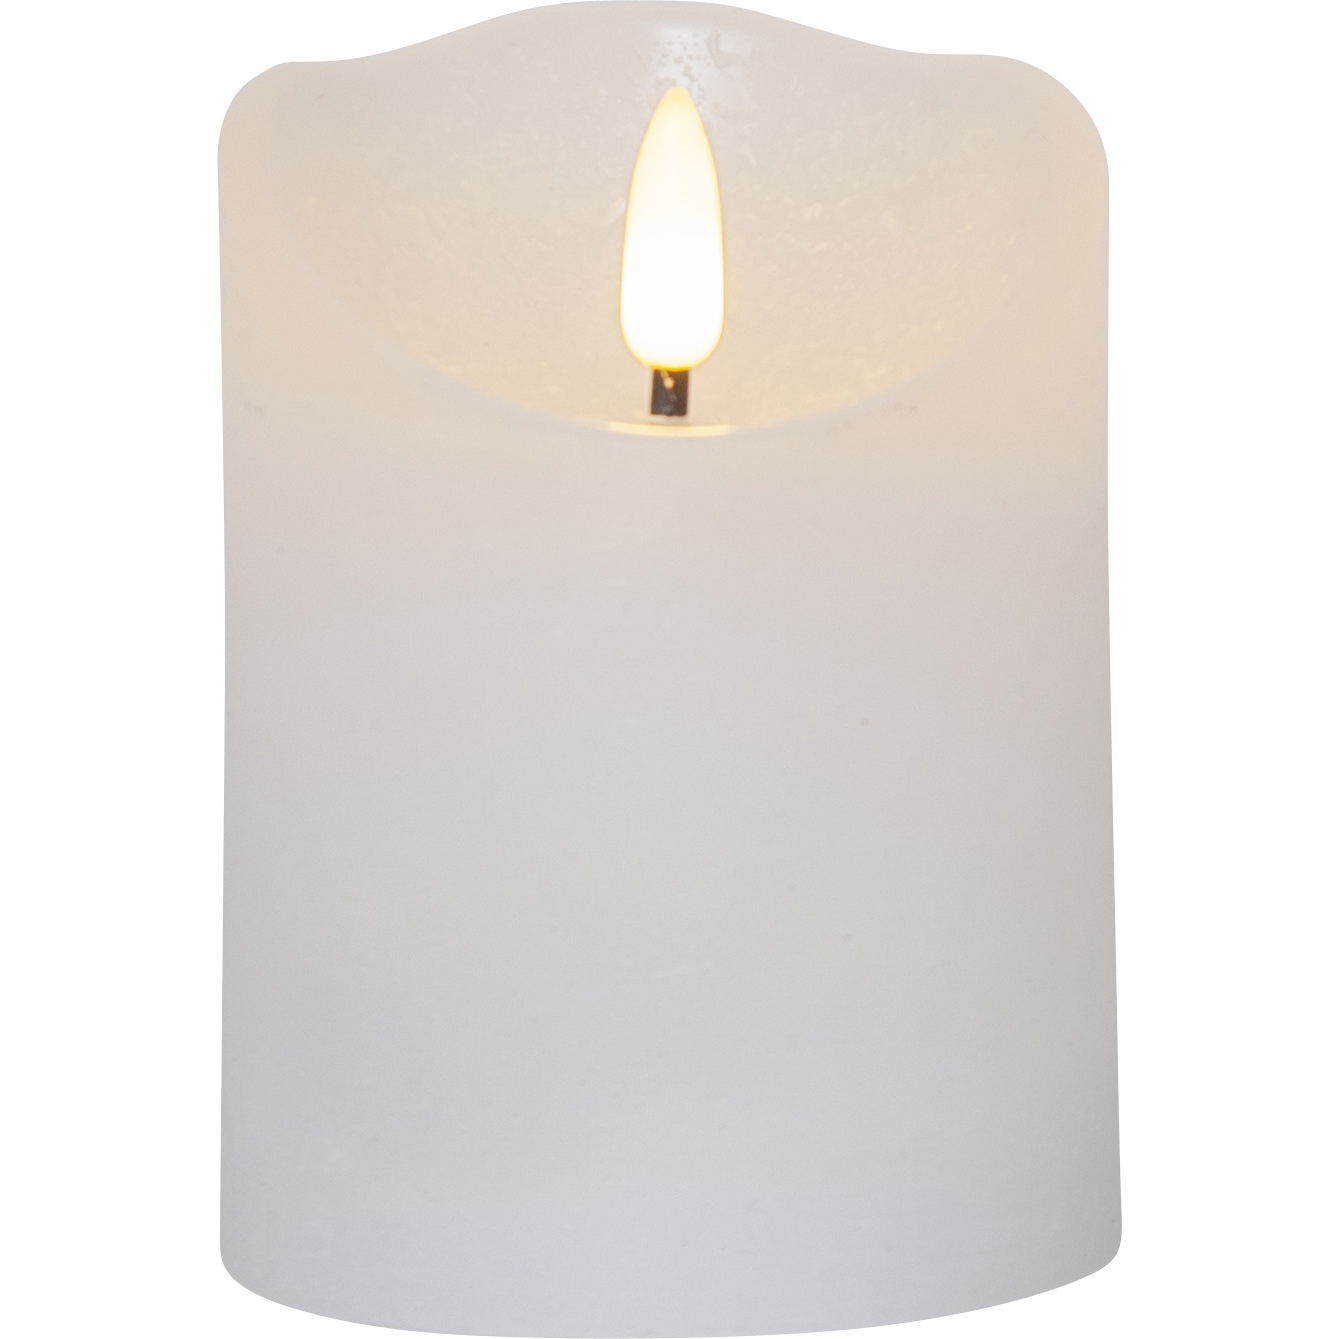 effektivitet Nominering i mellemtiden Flamme Rustic LED Pillar Candle White, 10 cm - Star Trading @ RoyalDesign